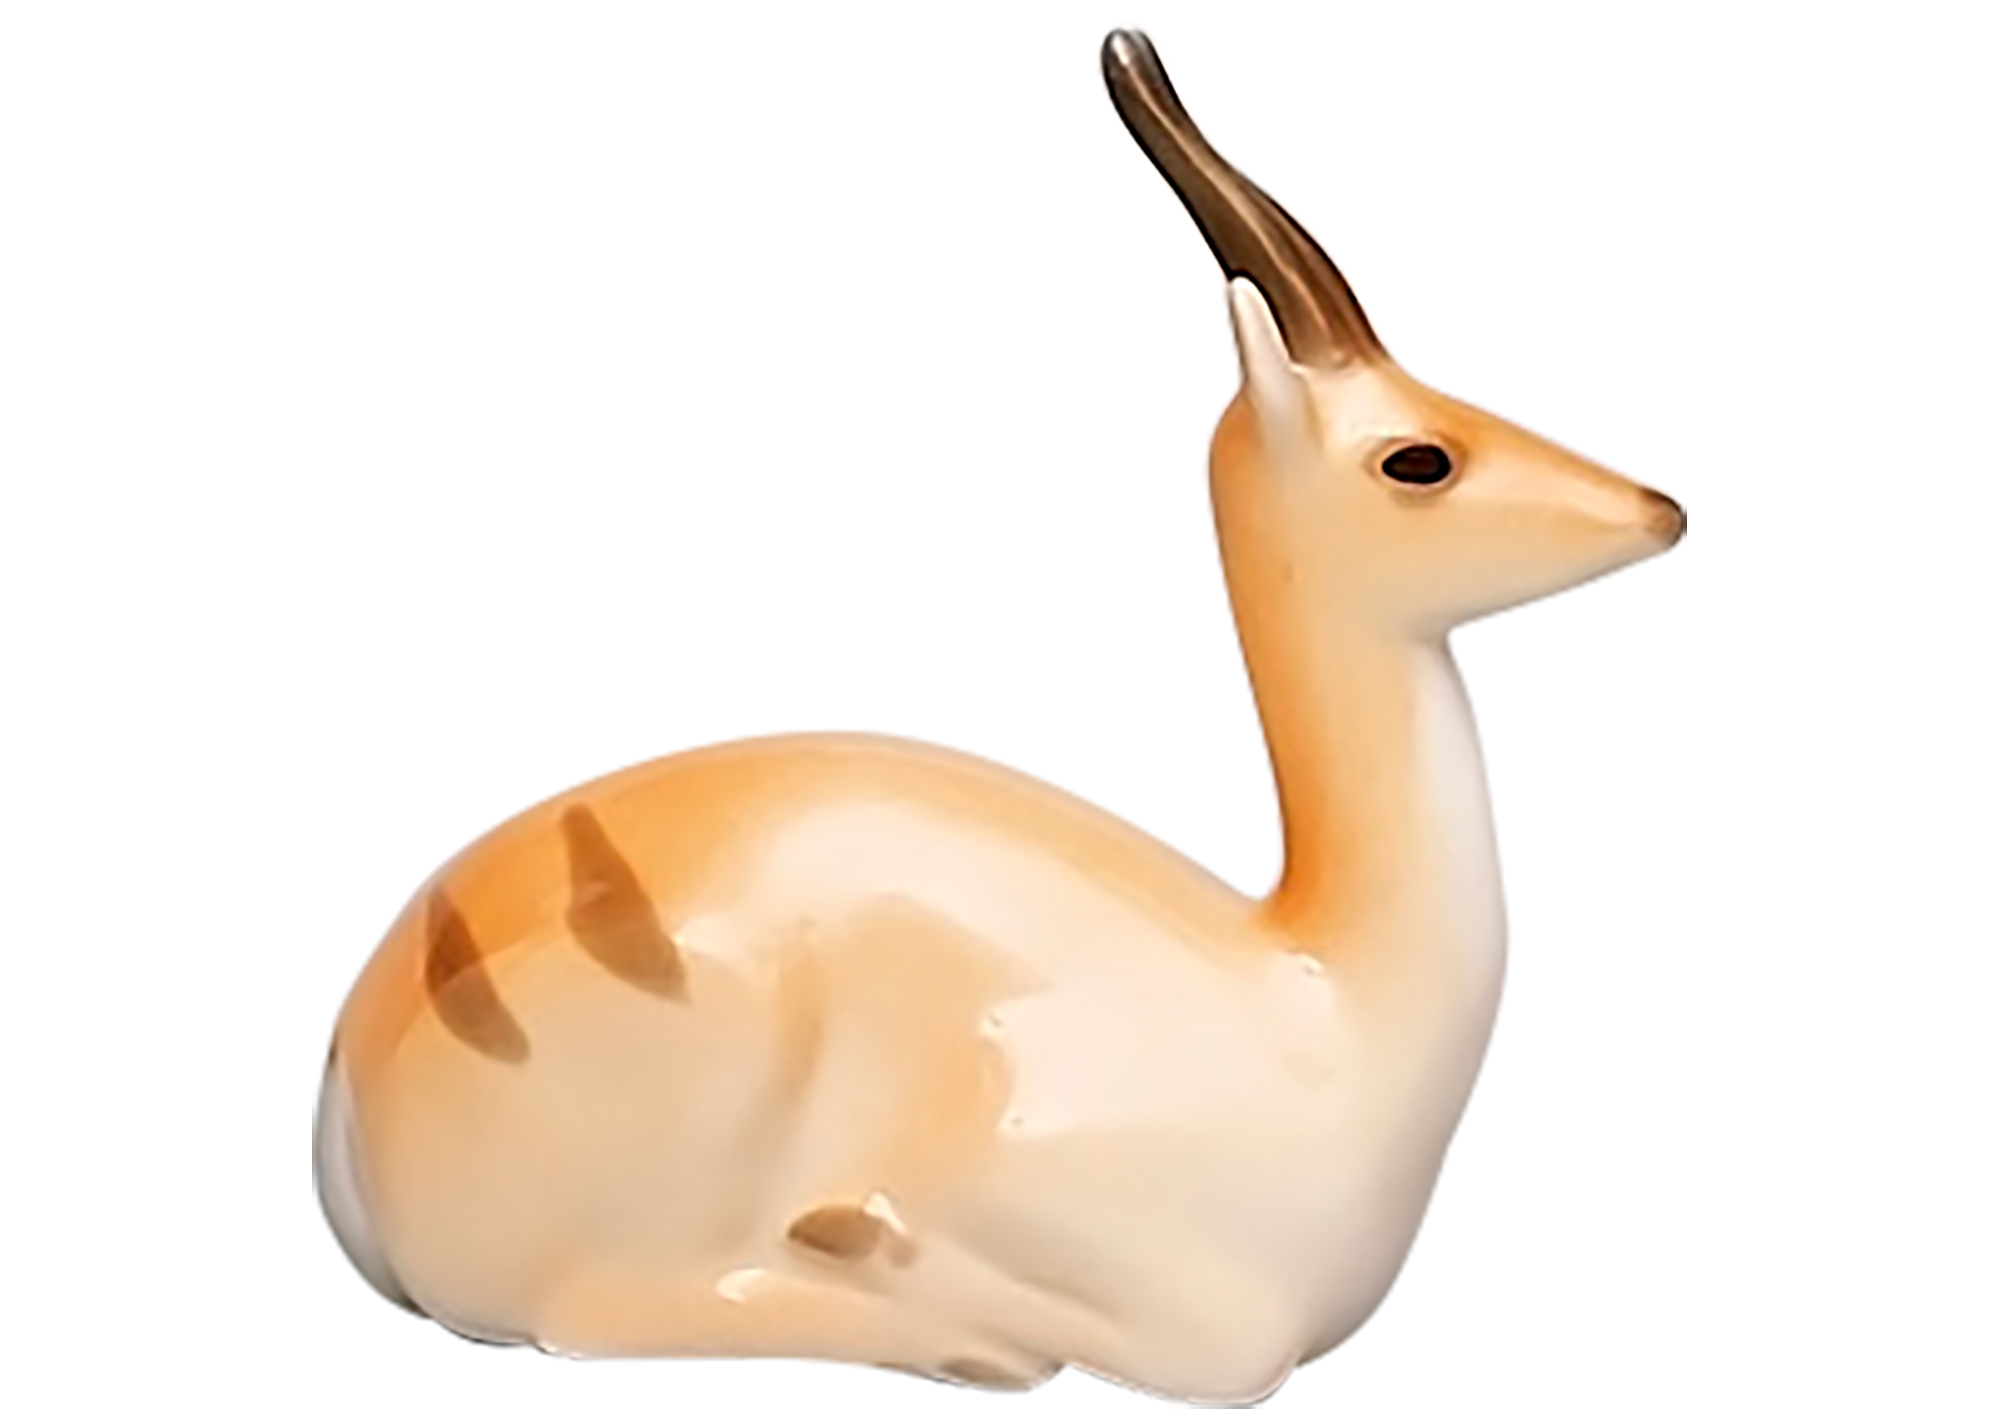 Buy Porcelain Gazelle Figurine at GoldenCockerel.com